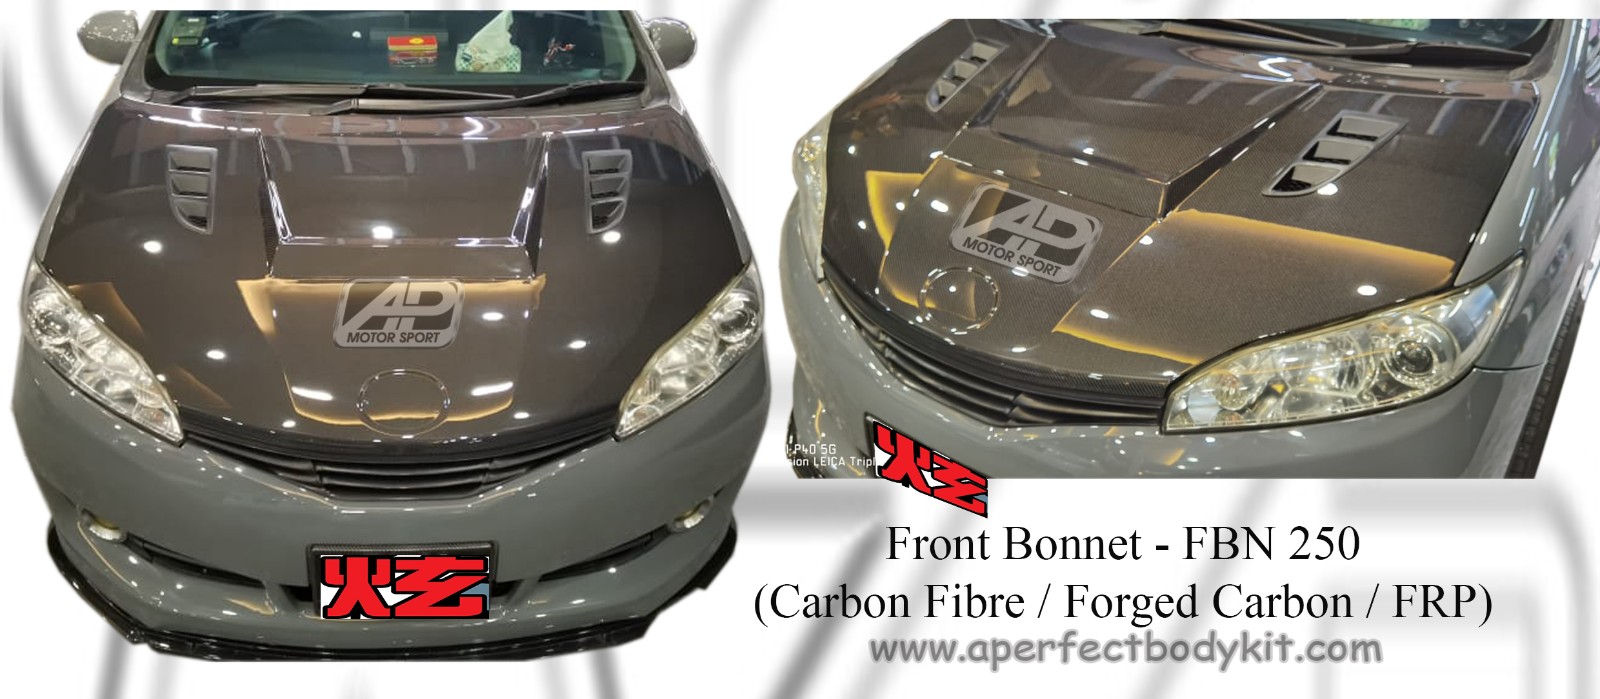 Toyota Wish 2009 Front Bonnet (AP Style 2) Carbon Fibre / Fo